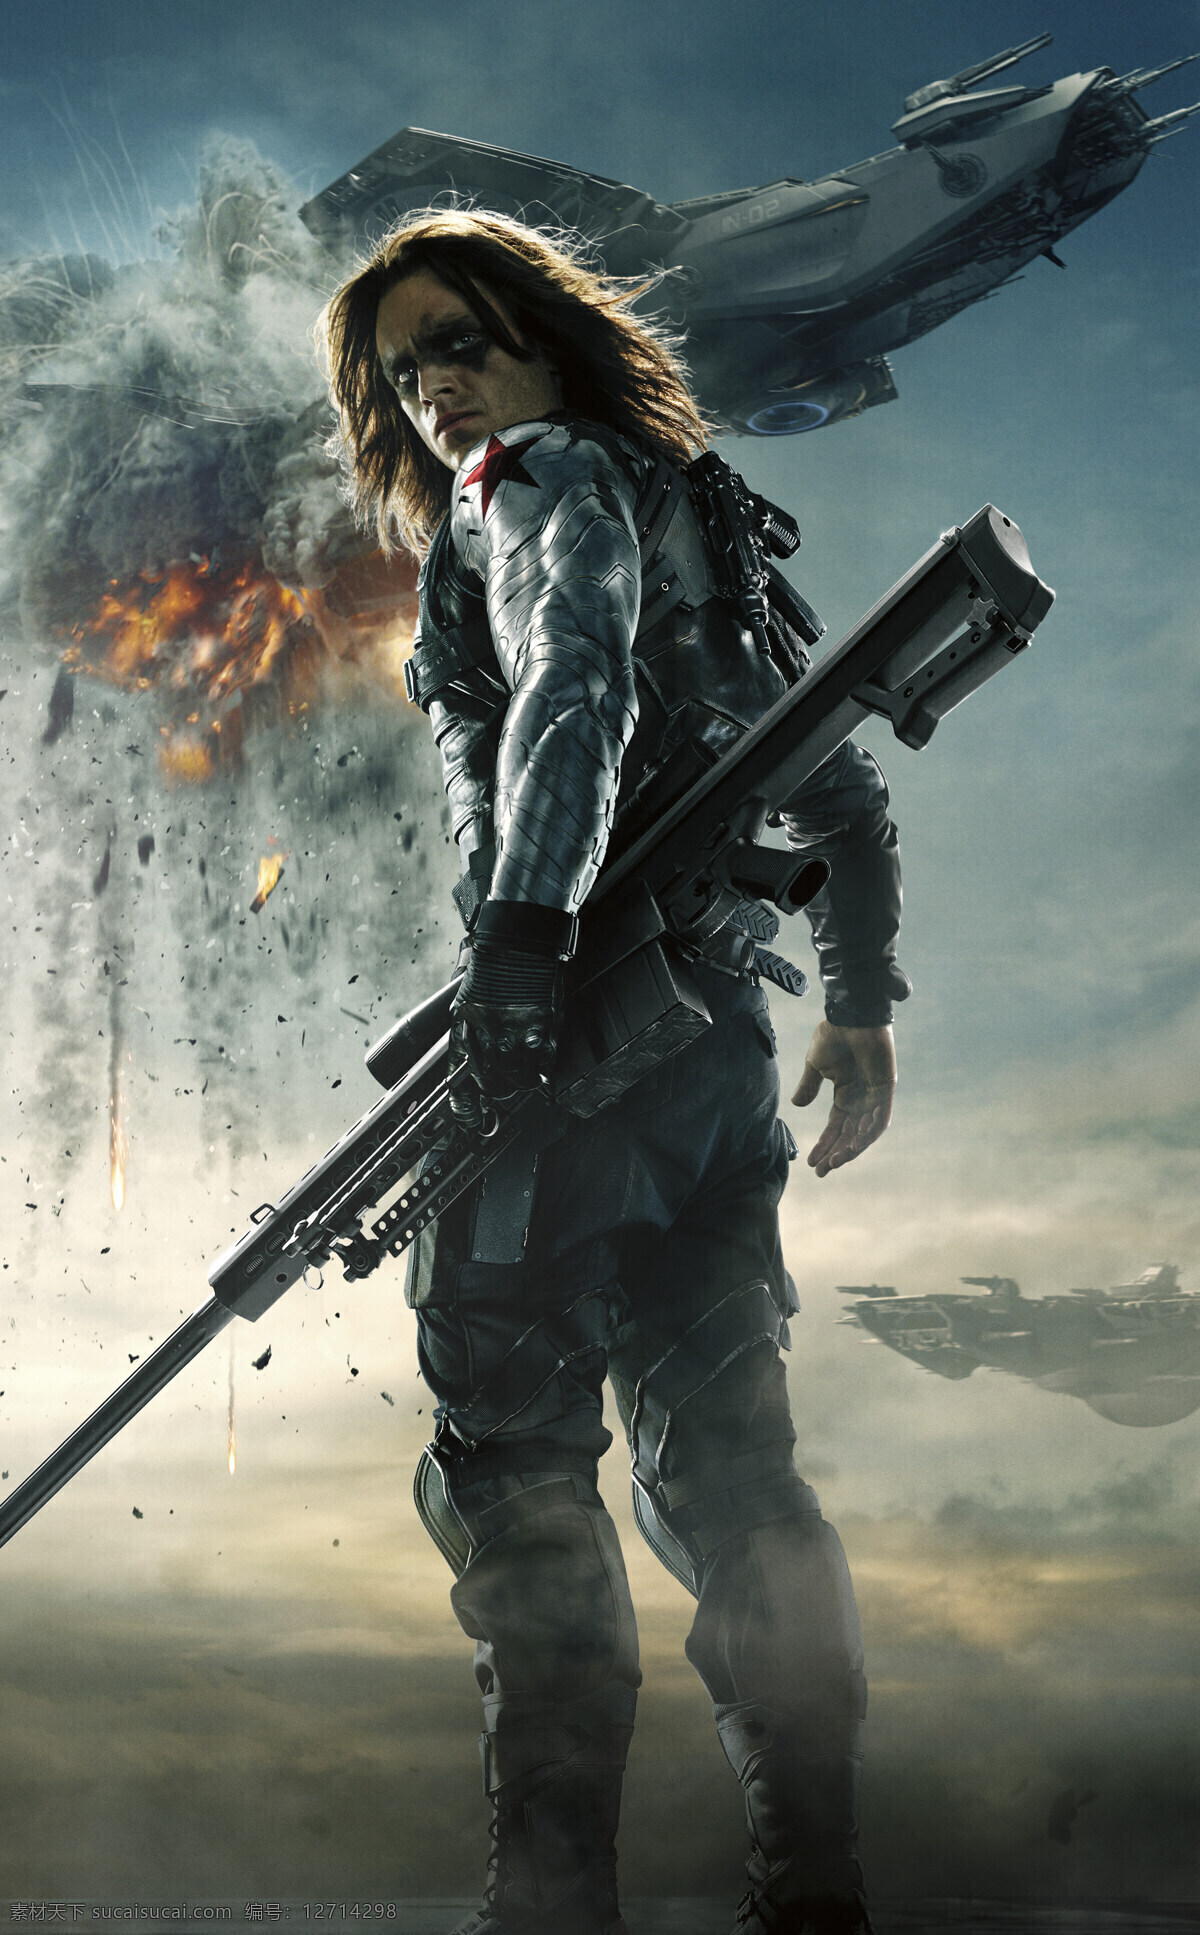 冬日战士 美国队长2 巴基巴恩斯 塞巴斯蒂安 斯坦 爆炸 巴雷特狙击枪 特工 动作 冒险 科幻 电影海报 影视娱乐 文化艺术